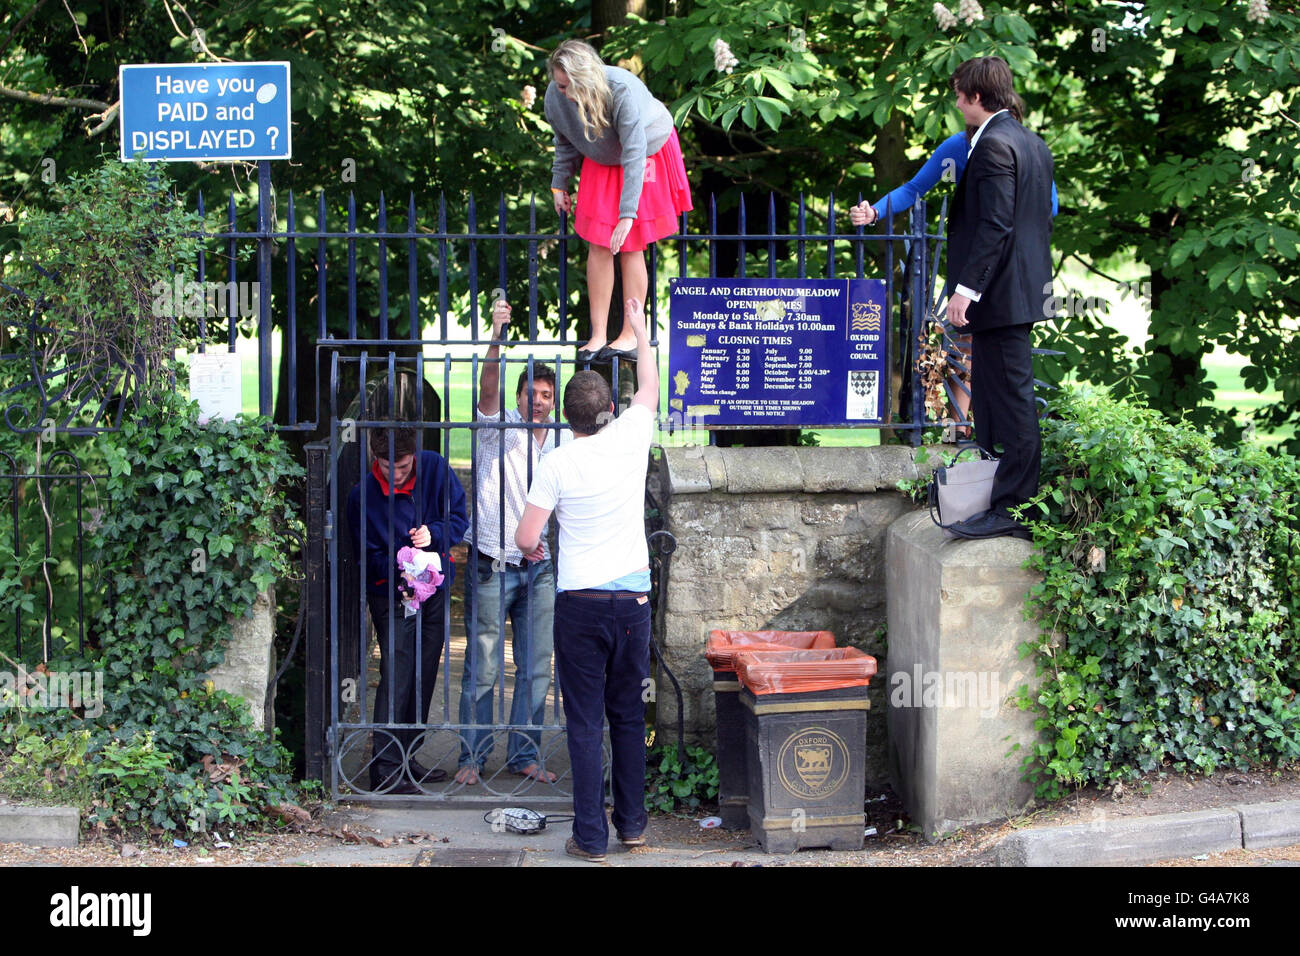 Maggio. Gli studenti si arrampicano su una recinzione dopo aver nuotato nel fiume Cherwell e festeggiano il giorno di maggio a Oxford. Foto Stock